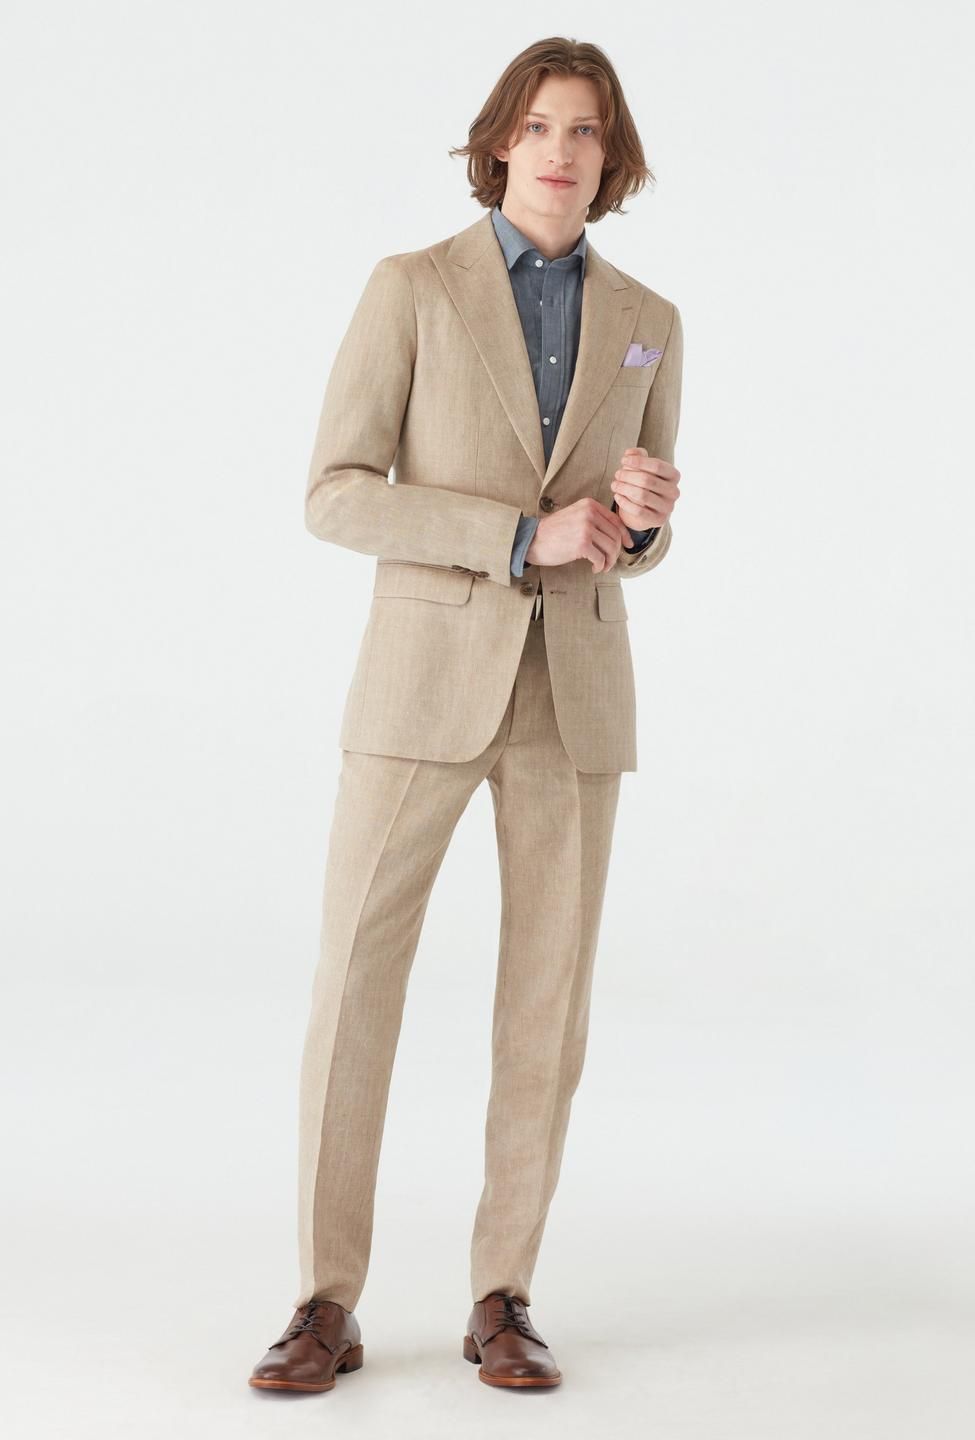 Barnsley Herringbone Light Brown Suit | Indochino